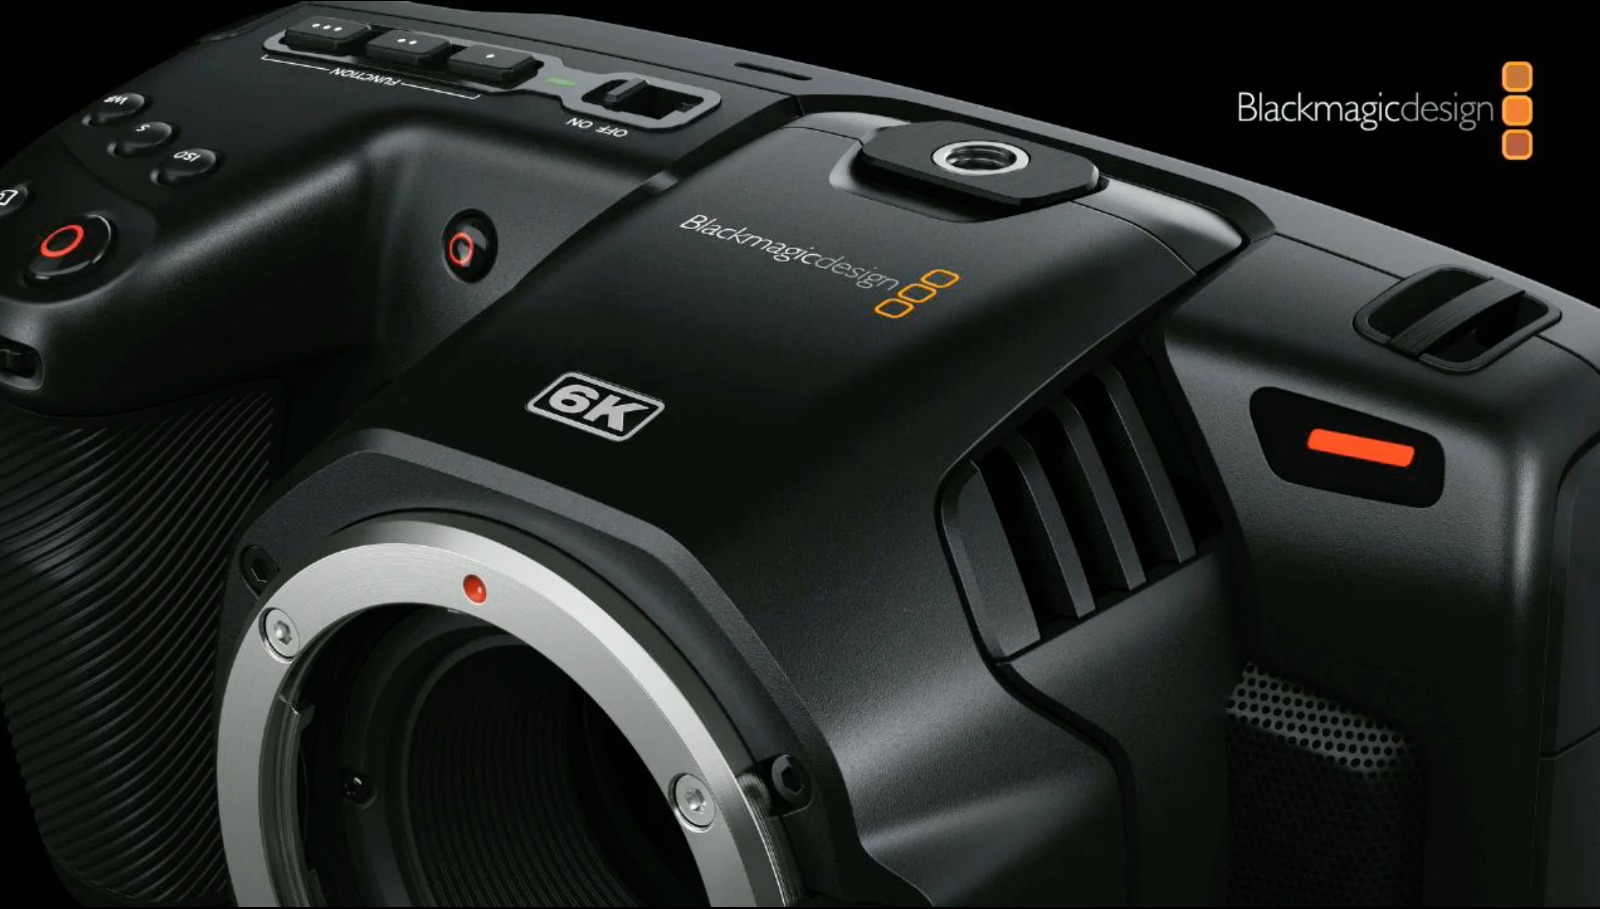 ブラックマジックデザインがポケットシネマカメラ6Kを発表 － super35mmセンサーとEFマウントを採用 | CineD